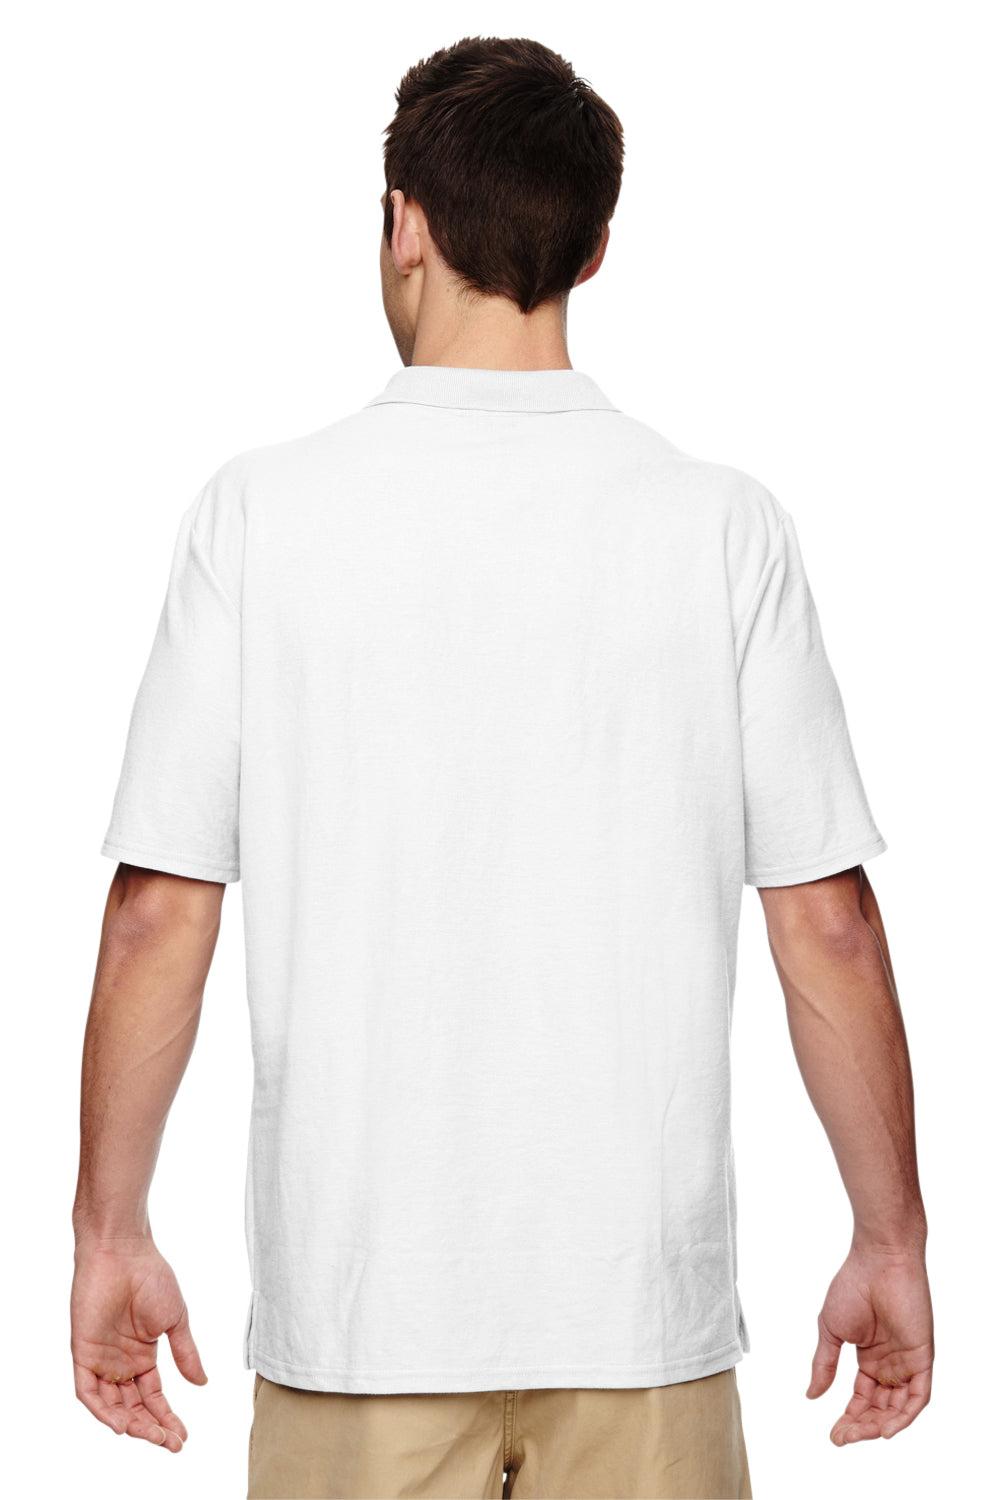 Gildan G728 Mens DryBlend Moisture Wicking Short Sleeve Polo Shirt White Back